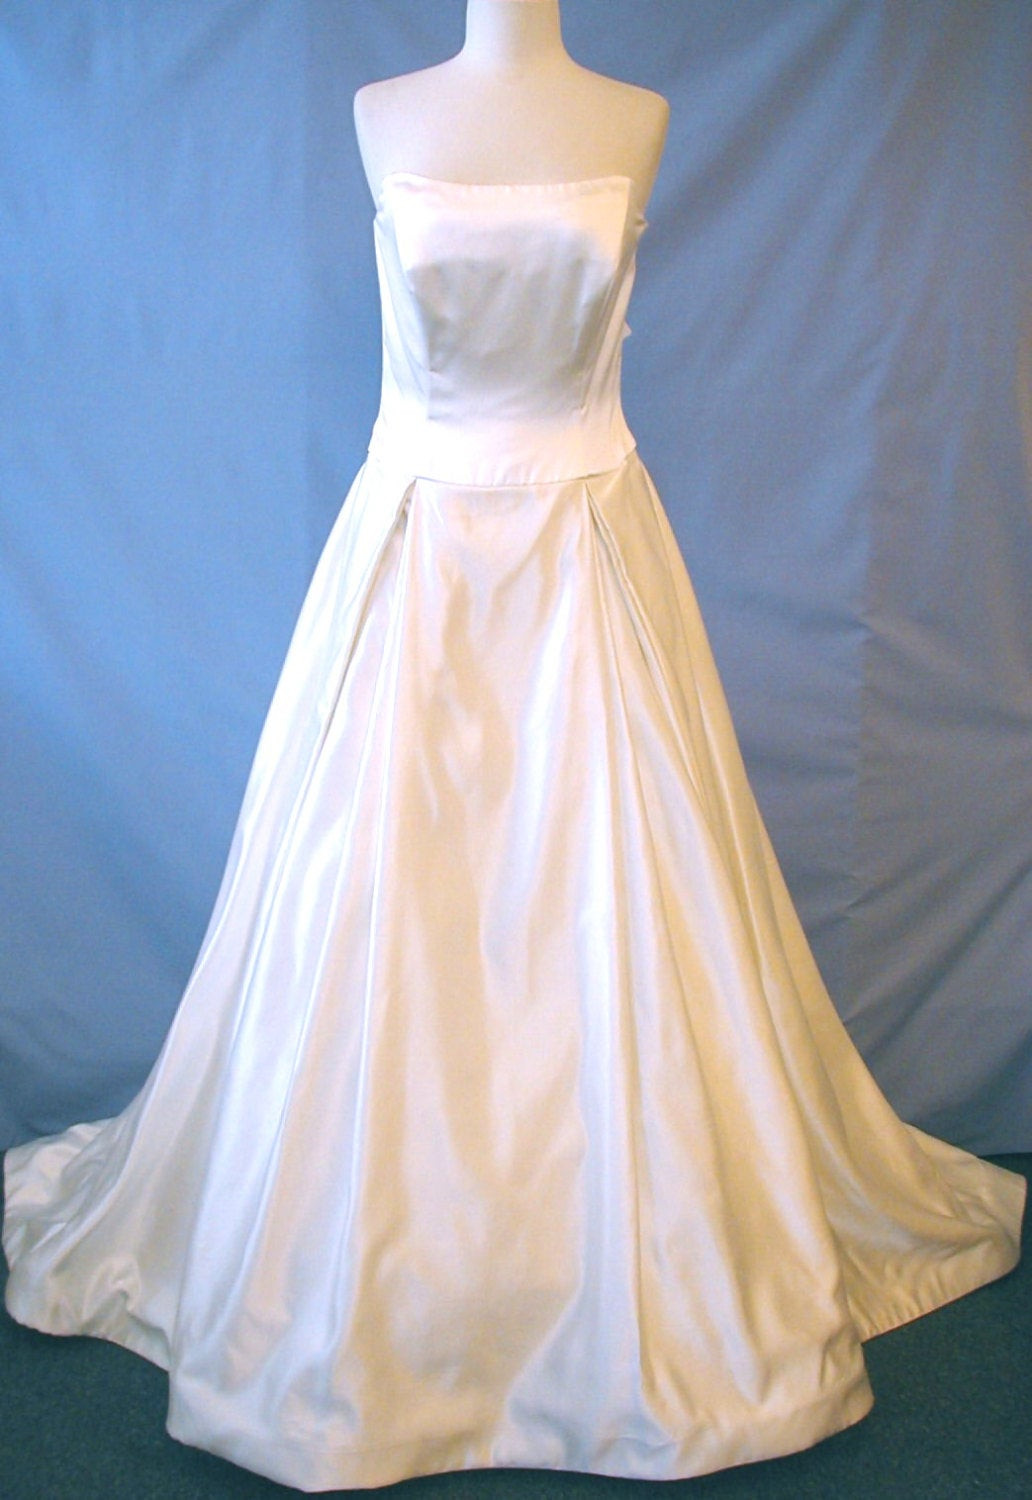 Givenchy Wedding Dress
 Beautiful Givenchy Wedding Dress size 10 by SophiaSimon on